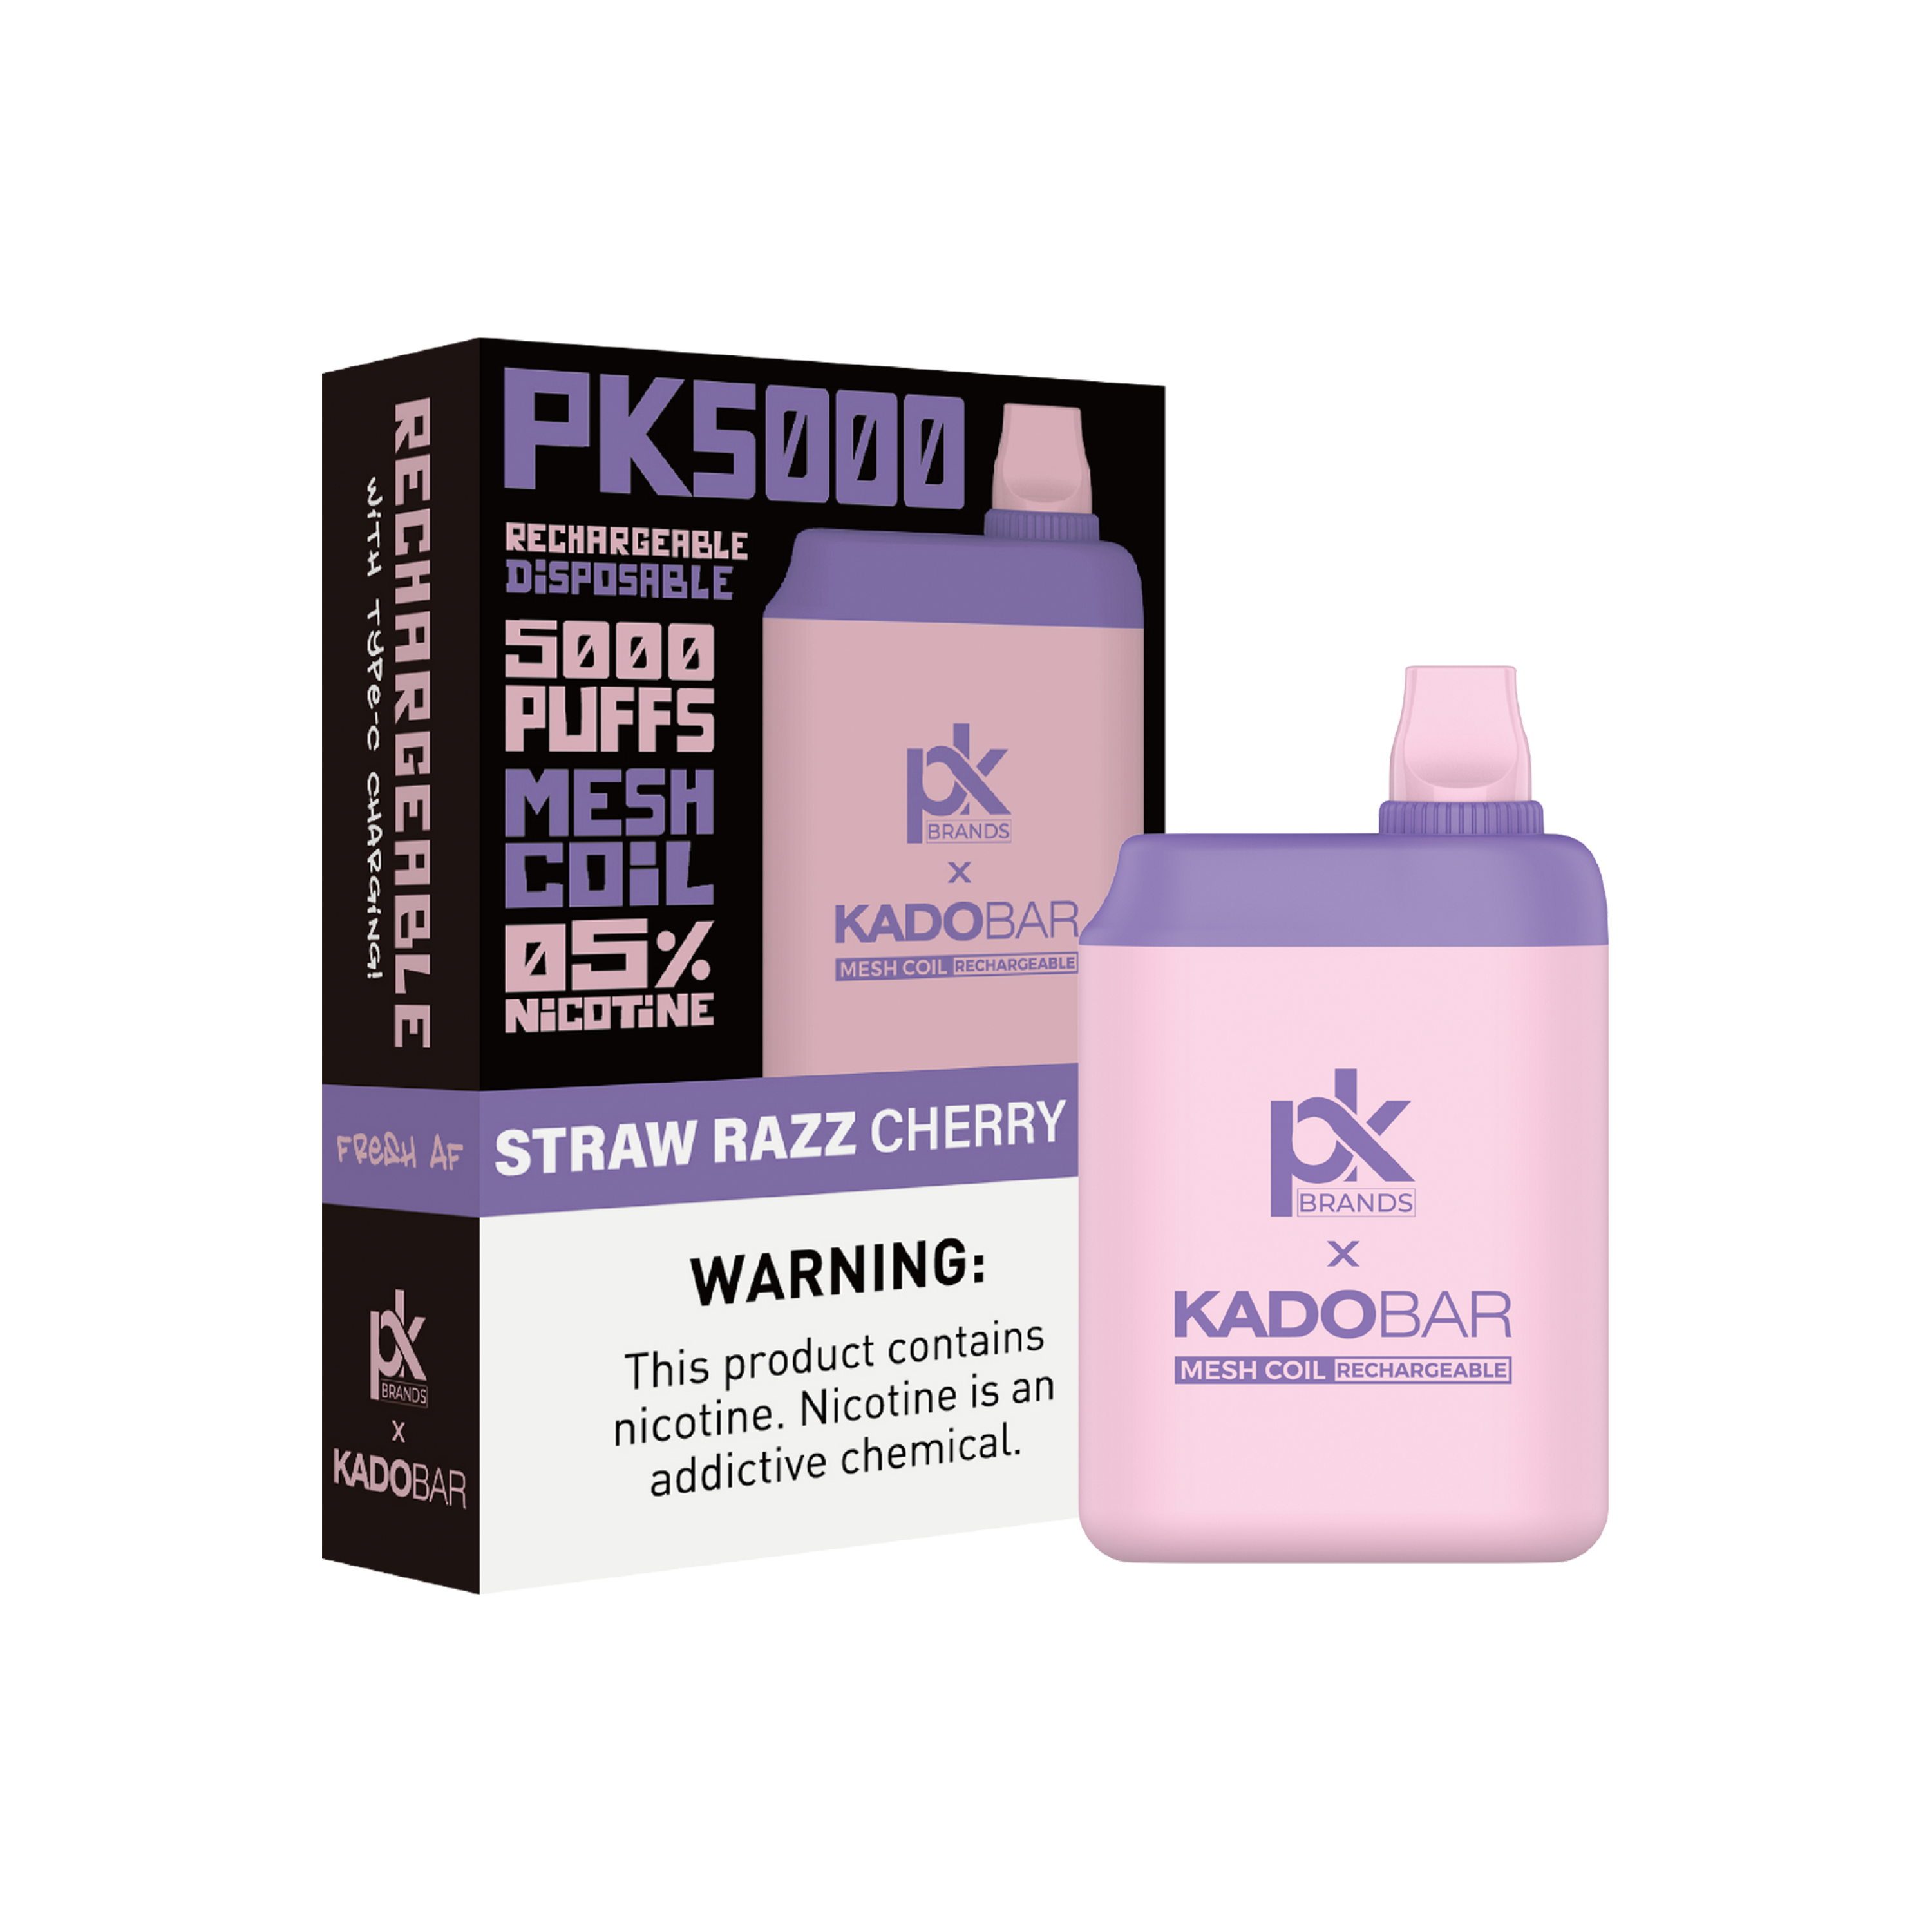 KadoBar x PK Brands PK5000